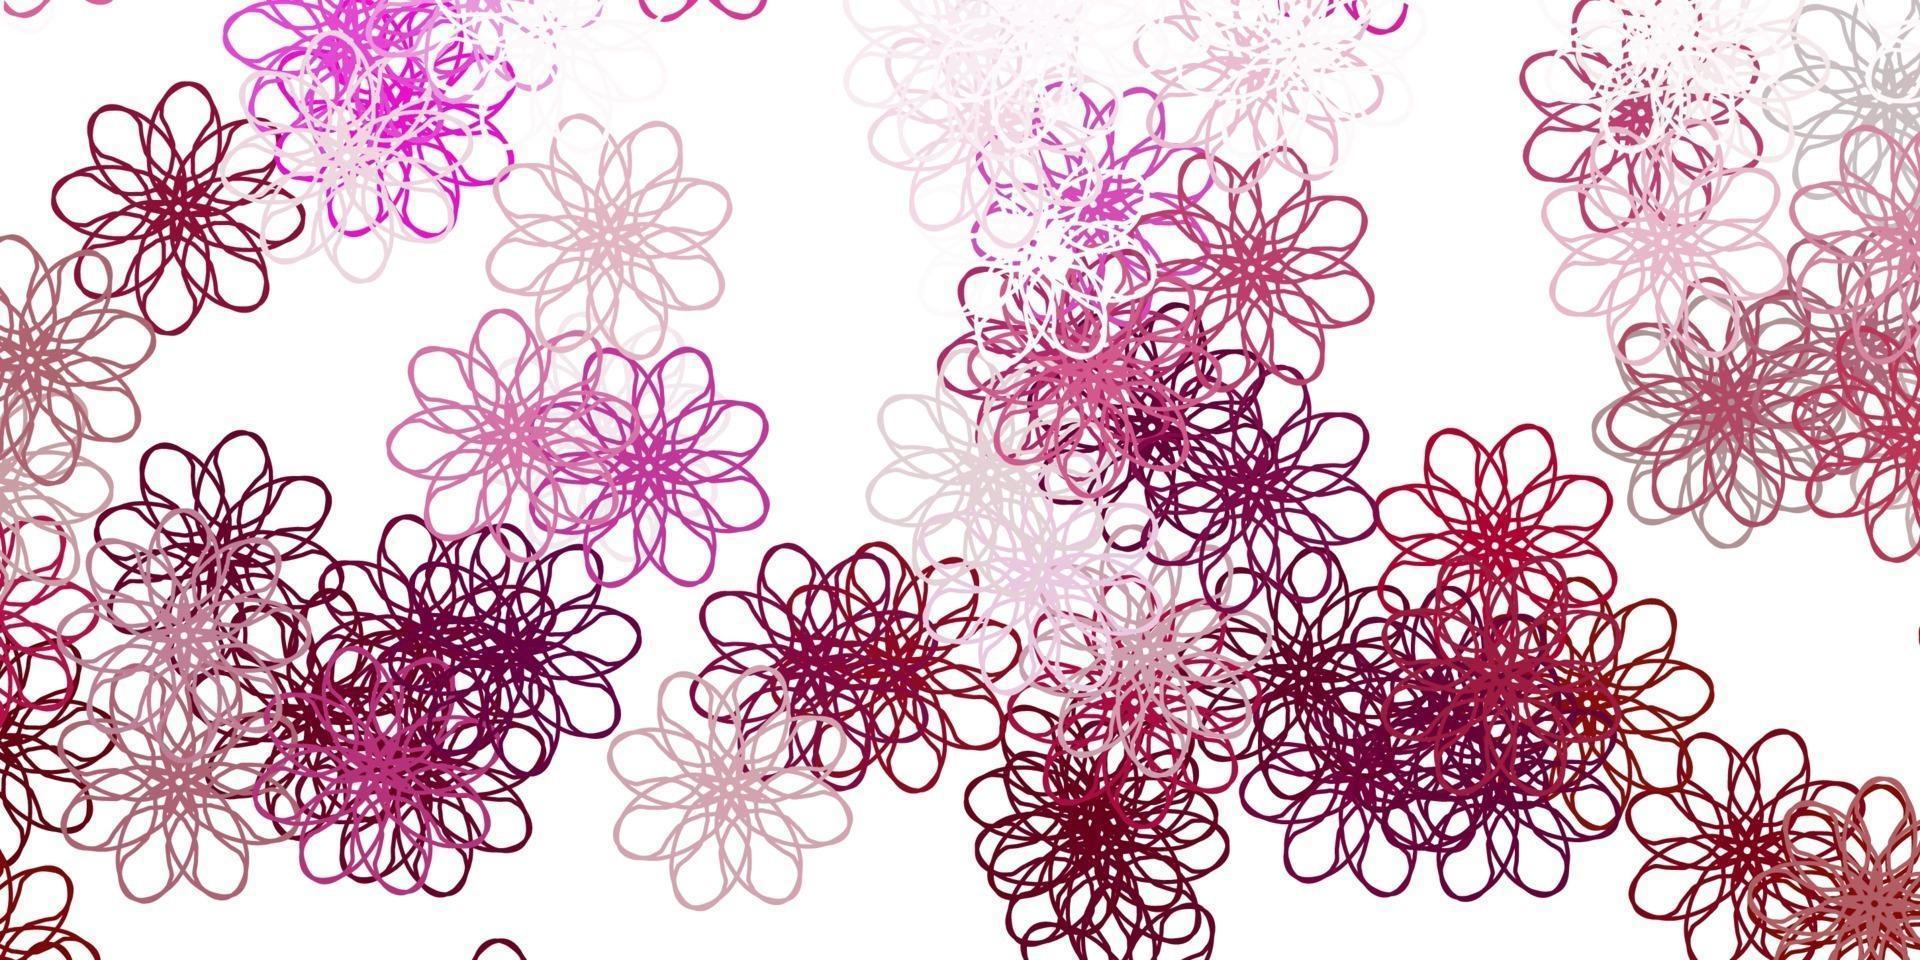 ljusrosa vektor doodle mönster med blommor.